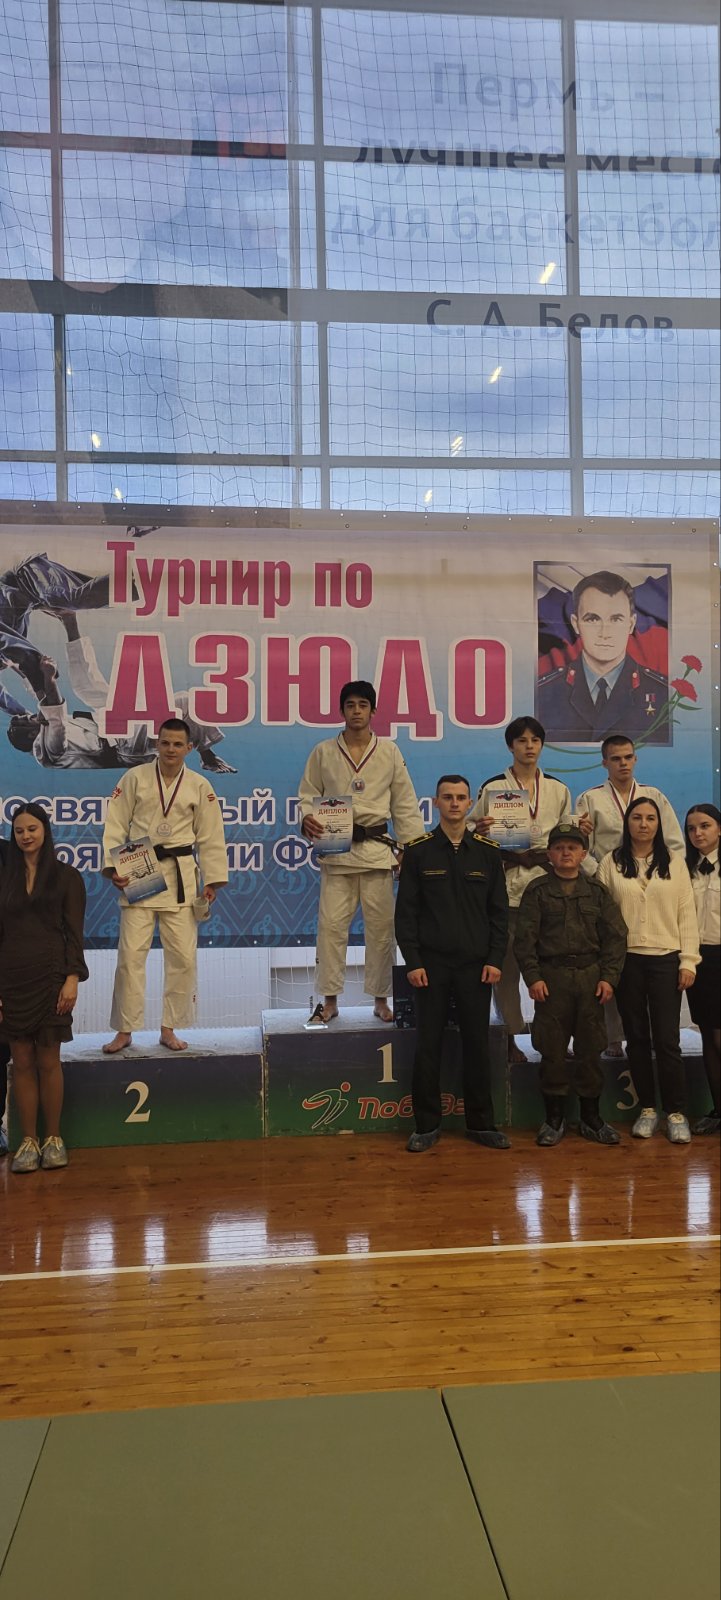 Поздравляем воспитанников СШОР "Витязь", победителей межрегионального турнира по дзюдо .